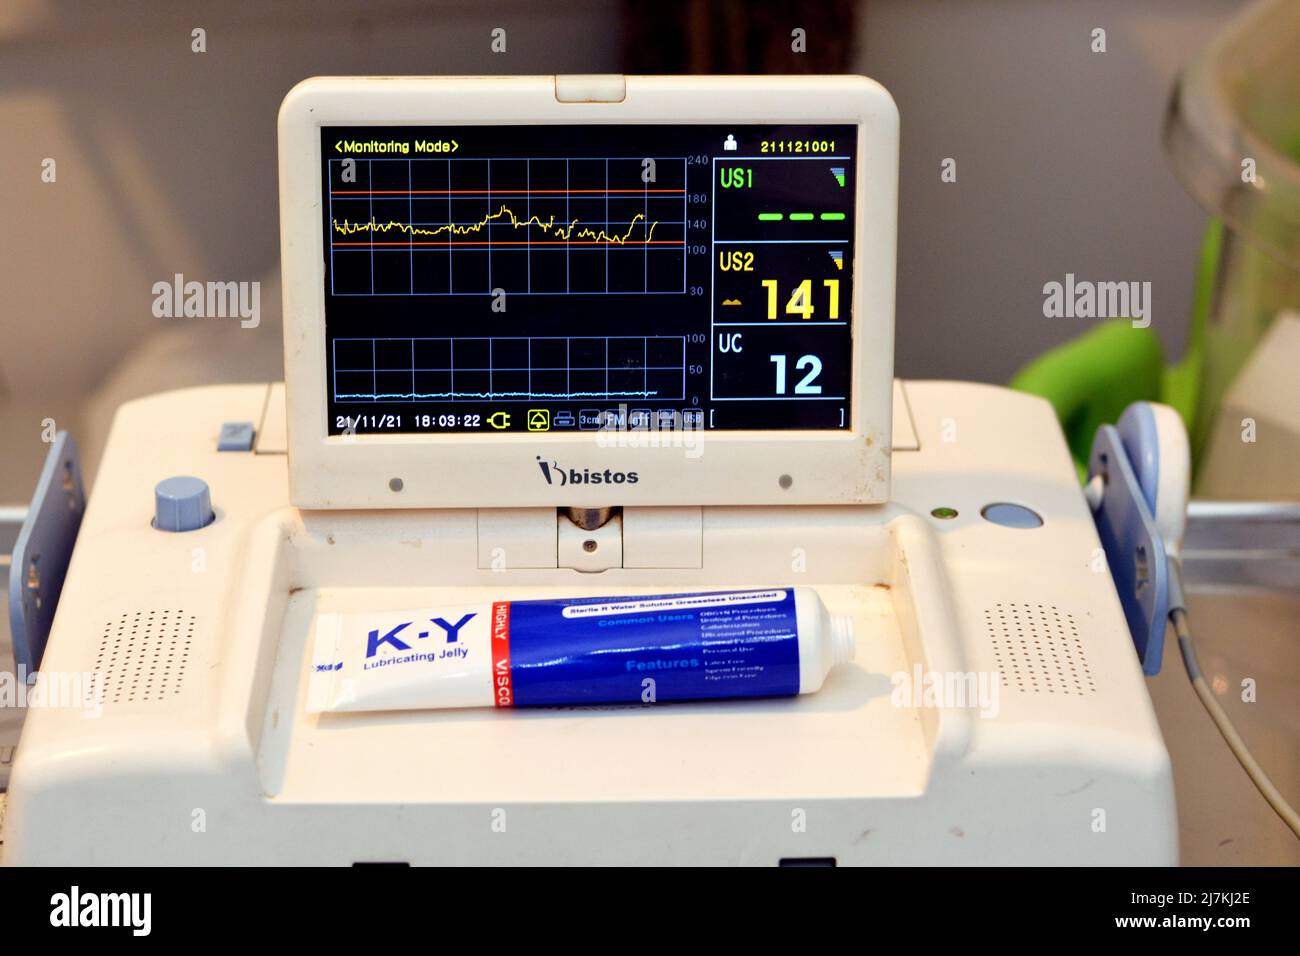 Cairo, Egitto, novembre 21 2021: Dispositivo cardiotocografico posto sull'addome della madre che registra la frequenza cardiaca fetale ottenuta tramite trasduttore a ultrasuoni, Foto Stock